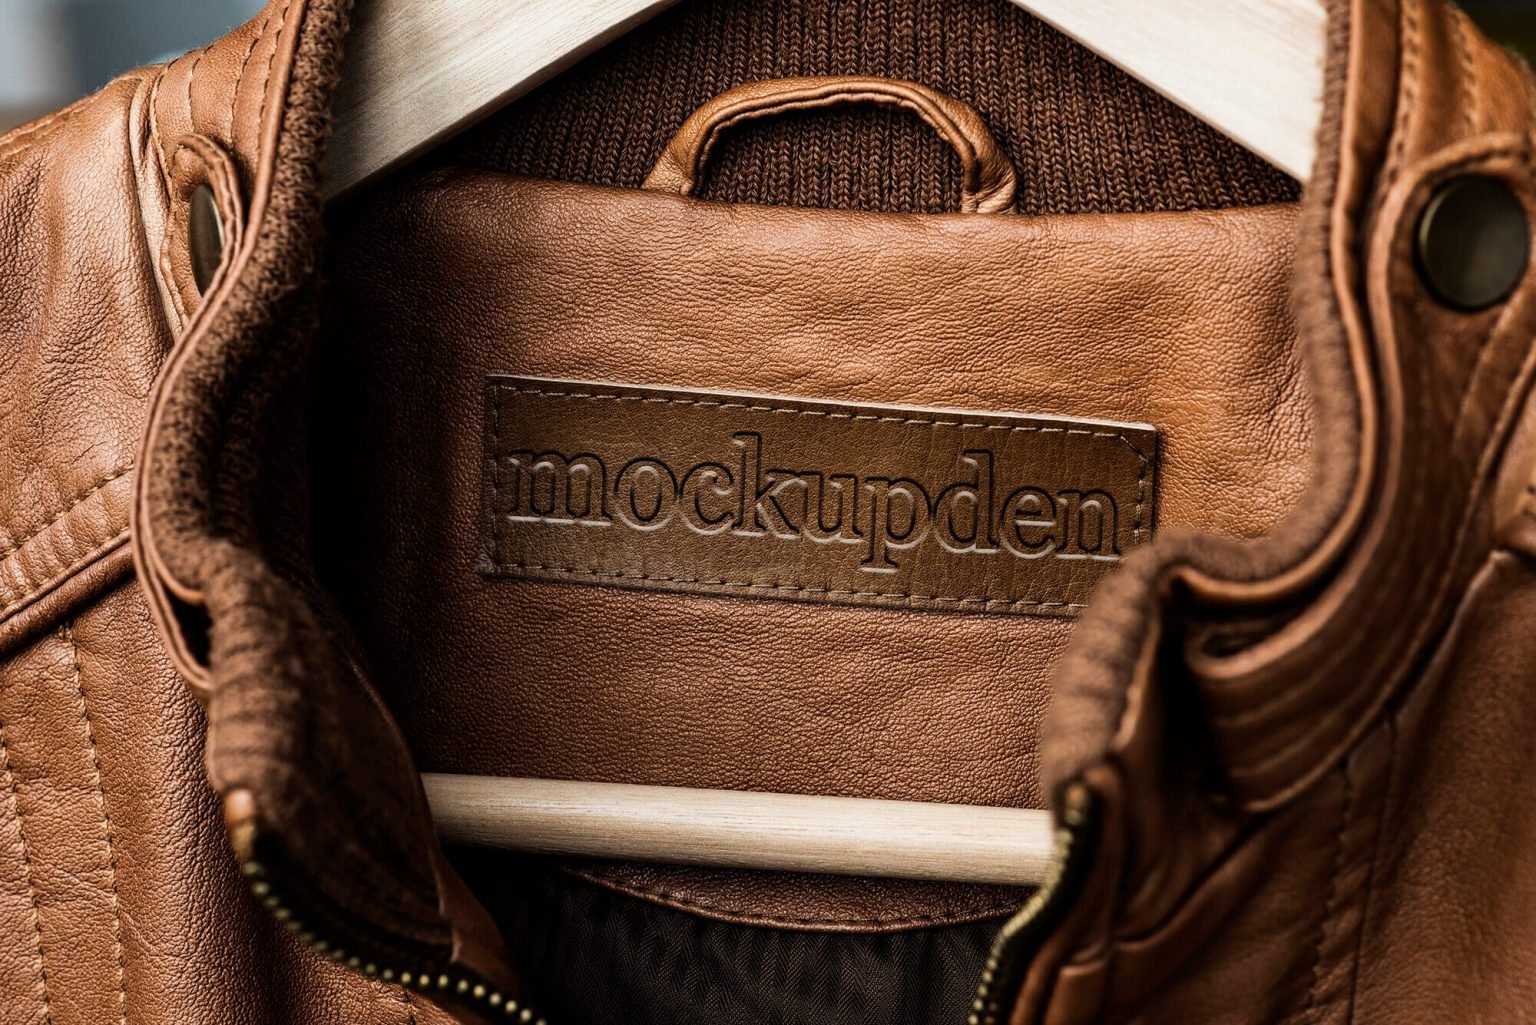 Download Jacket Mockup |41+ Free Track, Bomber, Denim, Leather Jacket